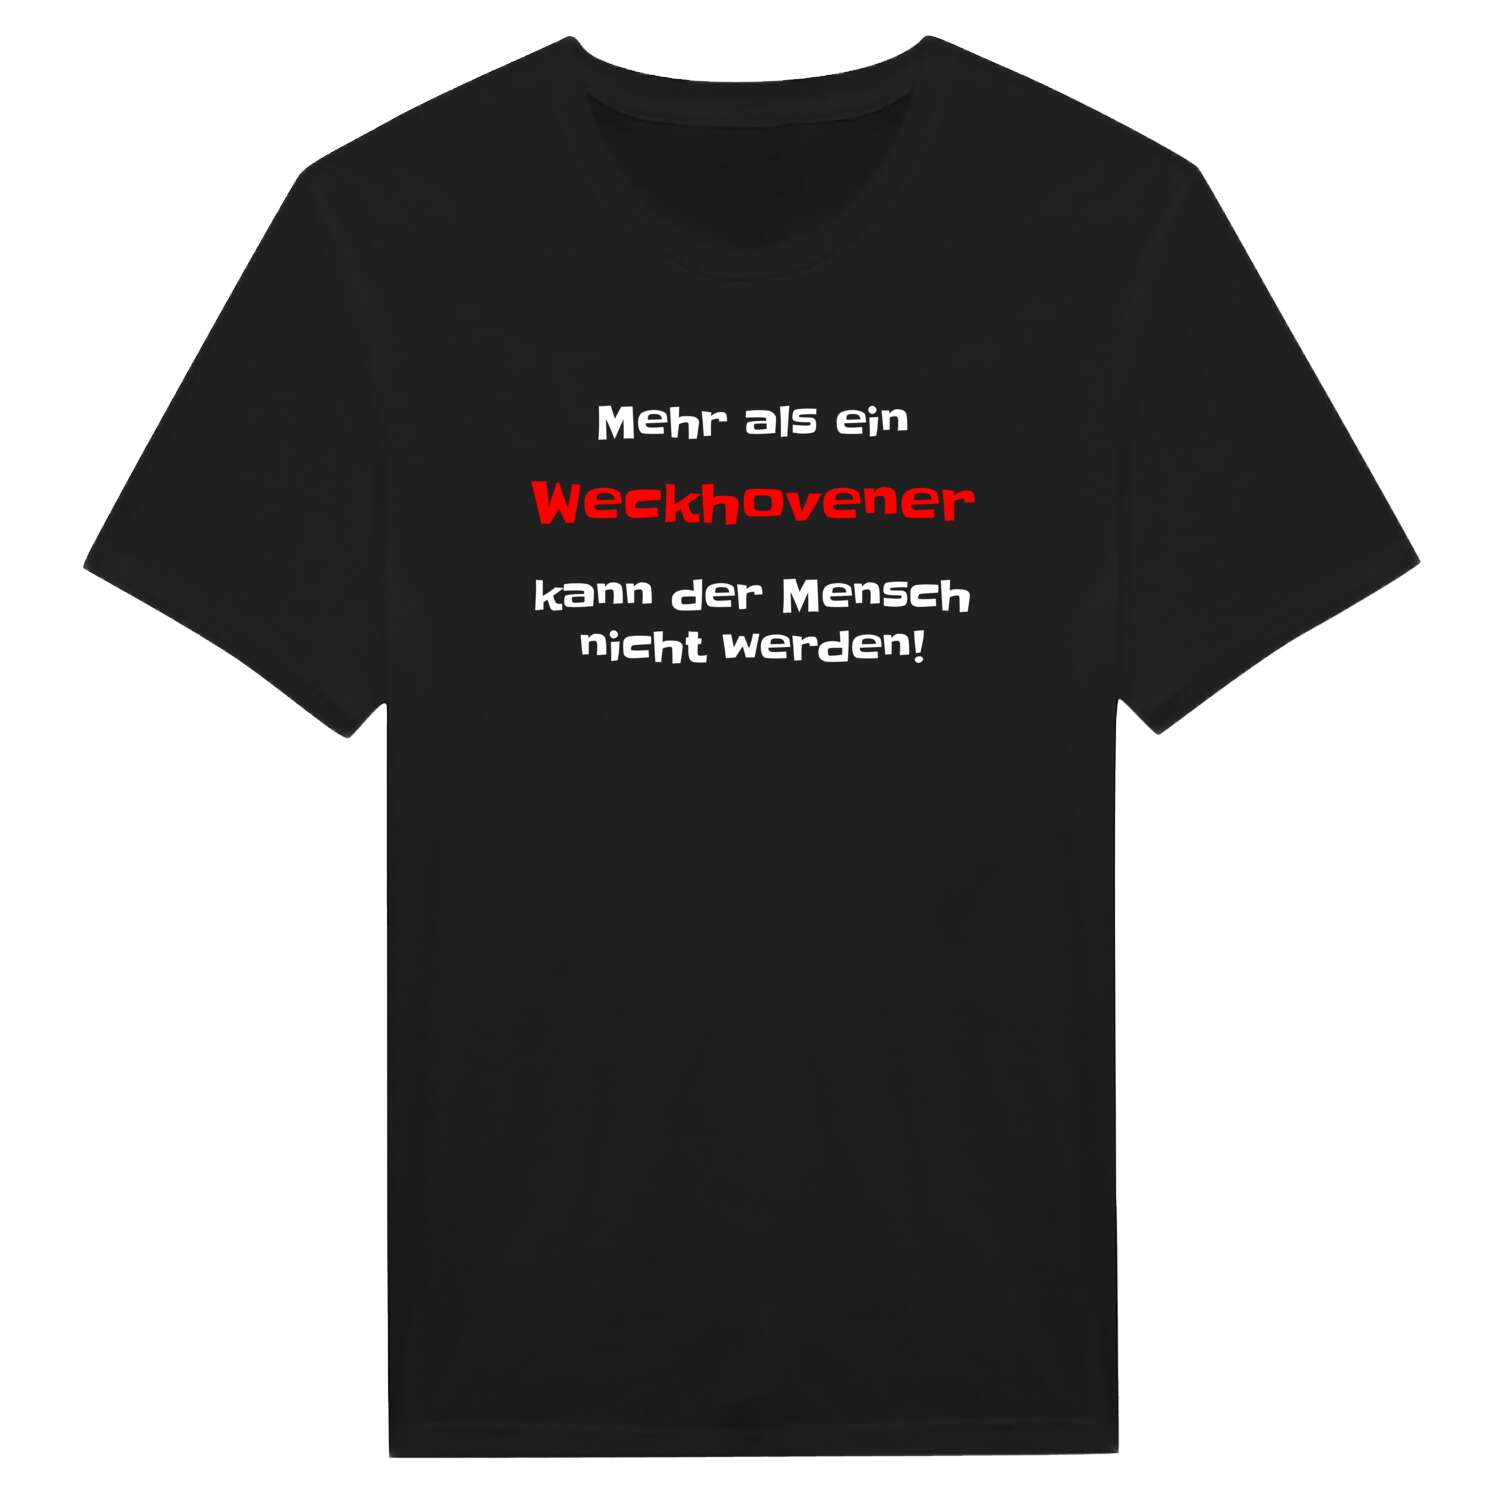 Weckhoven T-Shirt »Mehr als ein«